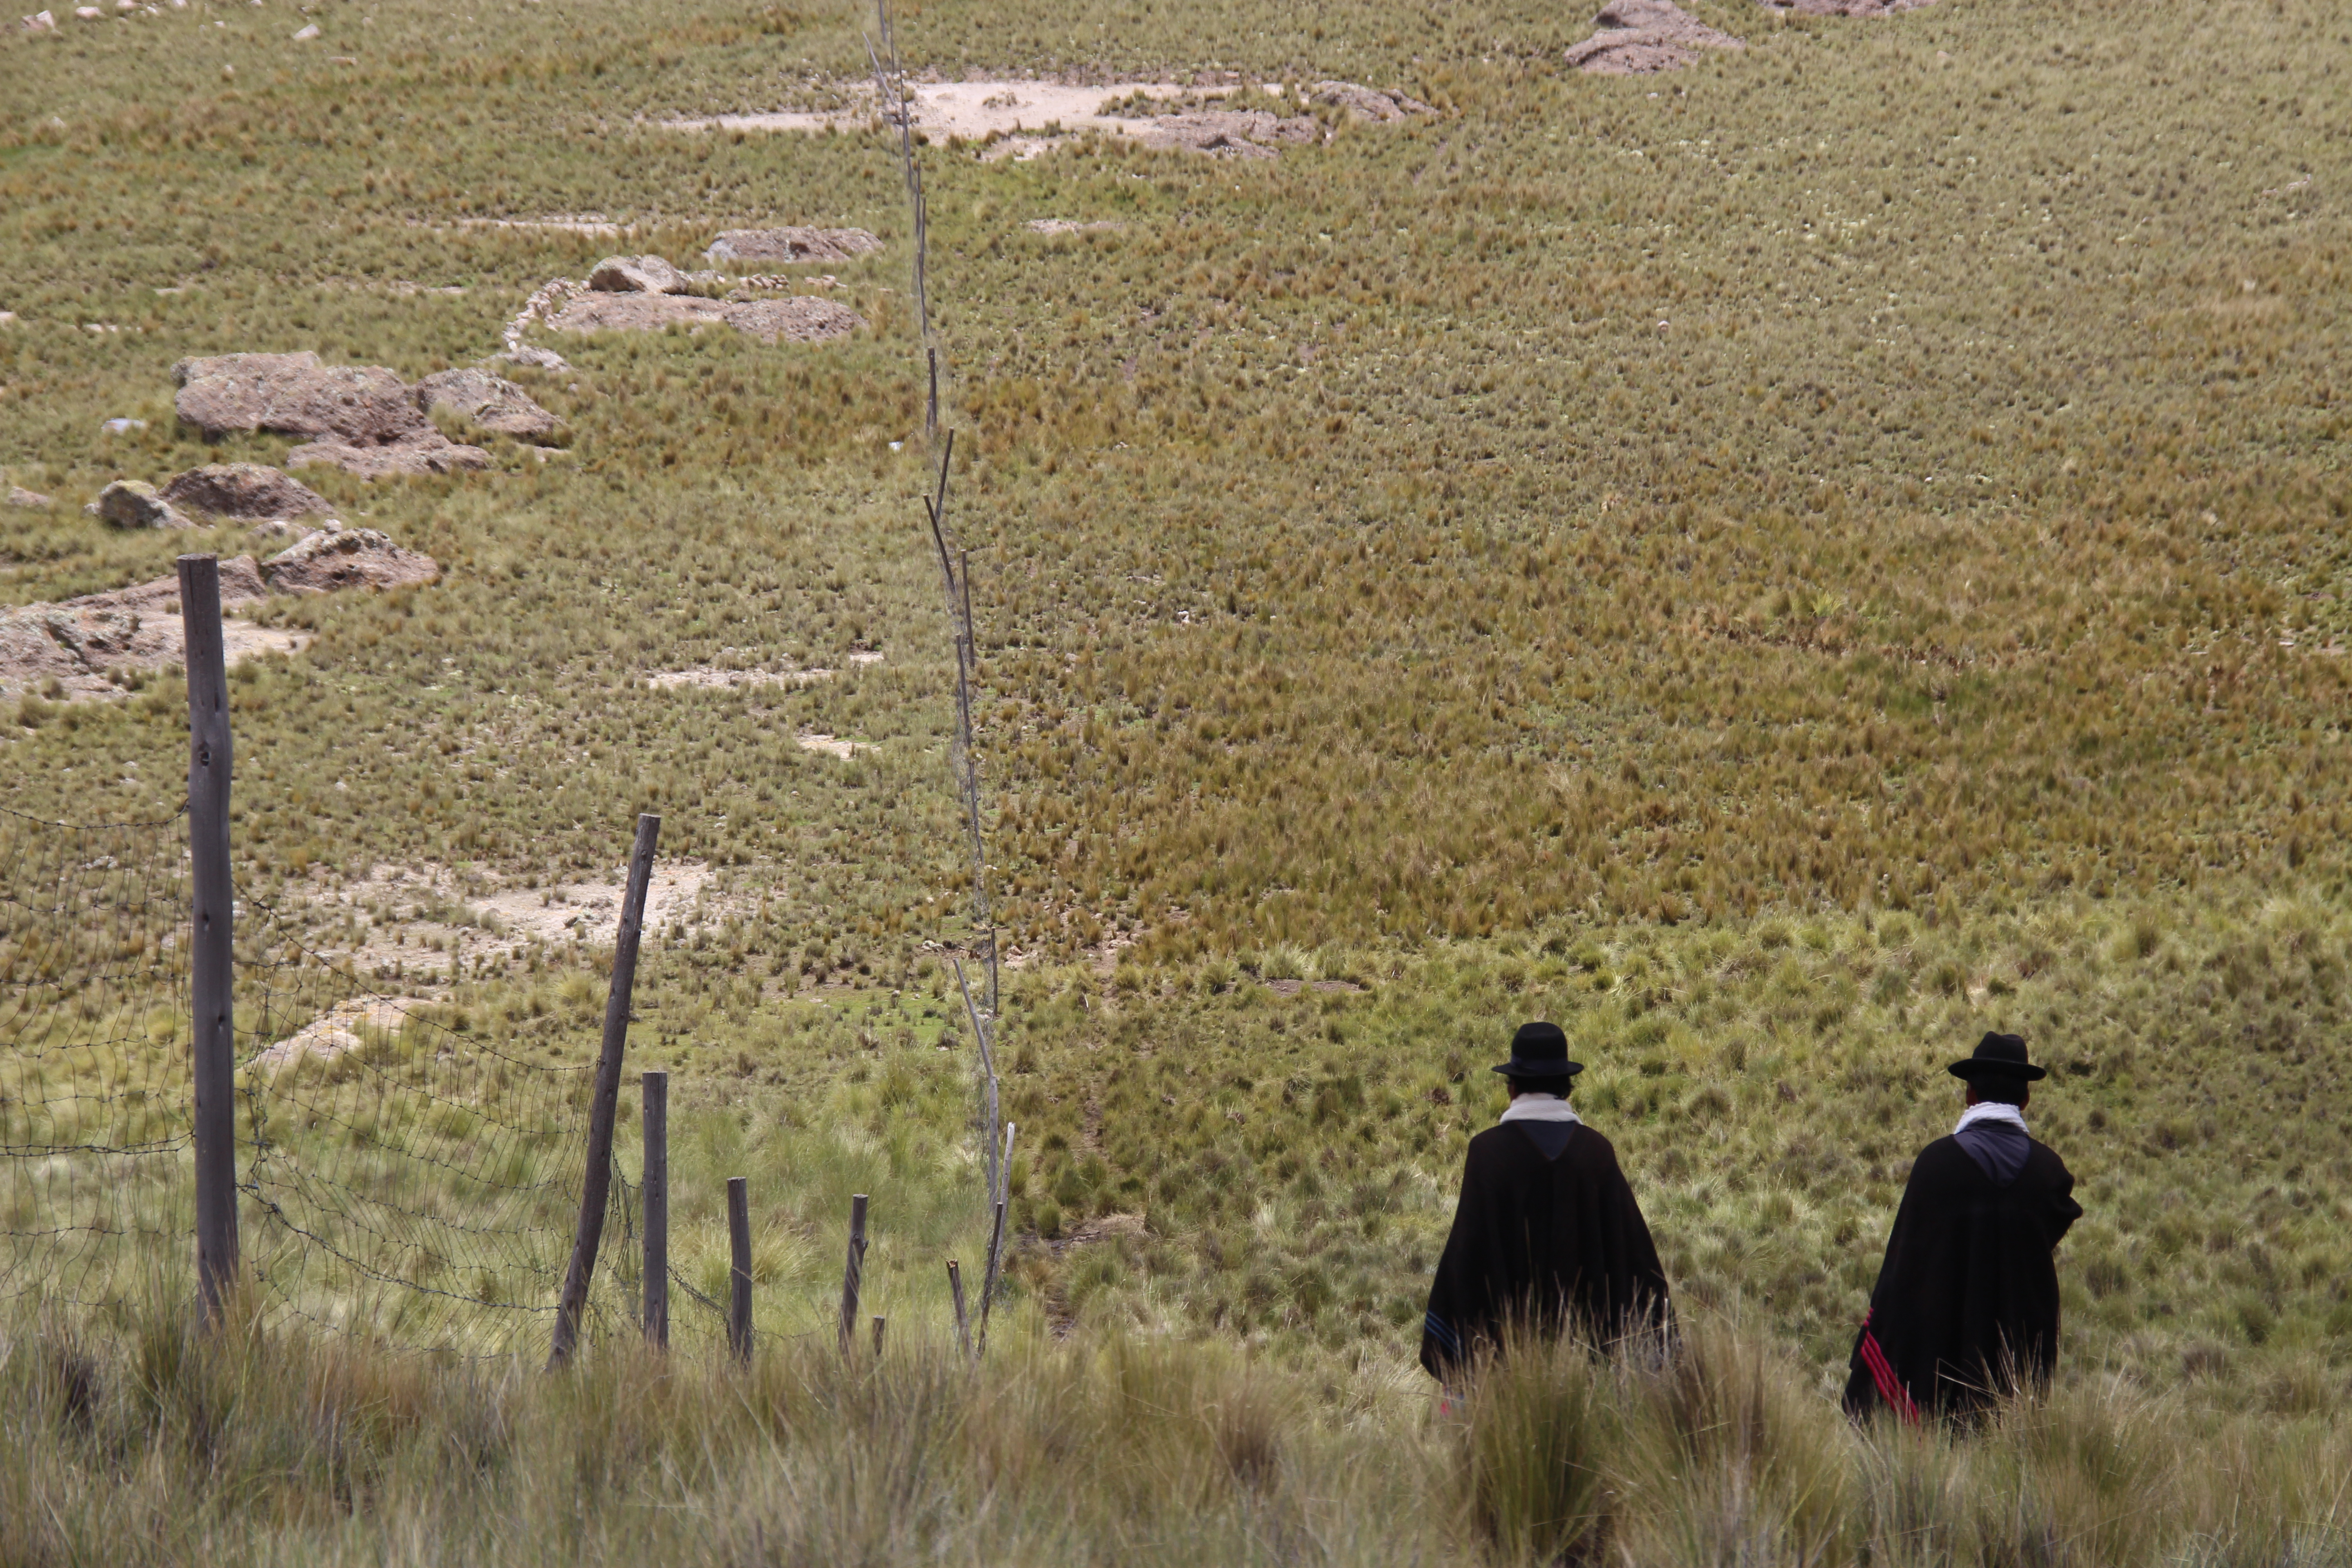 PERU: EMPIEZA EL DEBATE DE LA CONSULTA PREVIA LEGISLATIVA